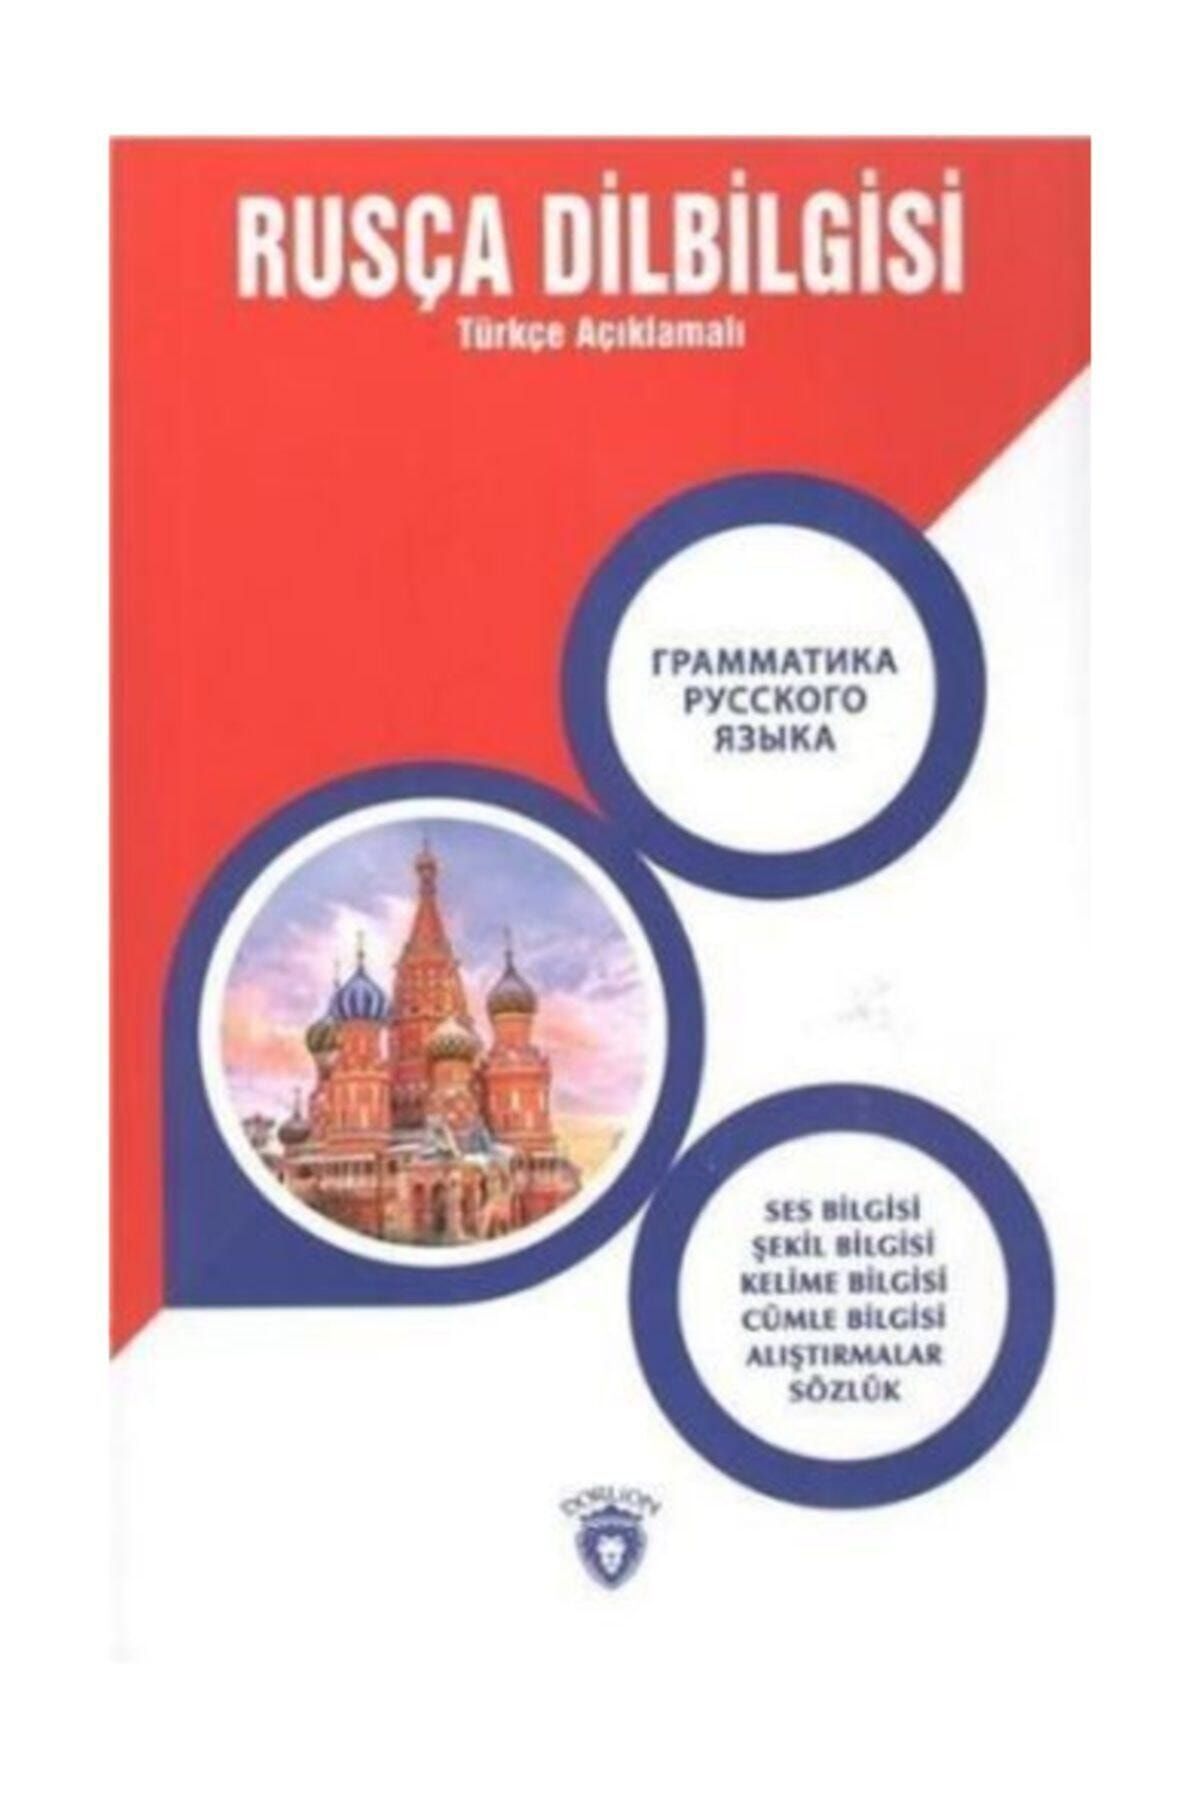 Dorlion Yayınevi Rusça Dilbilgisi (türkçe Açıklamalı) Kitabı